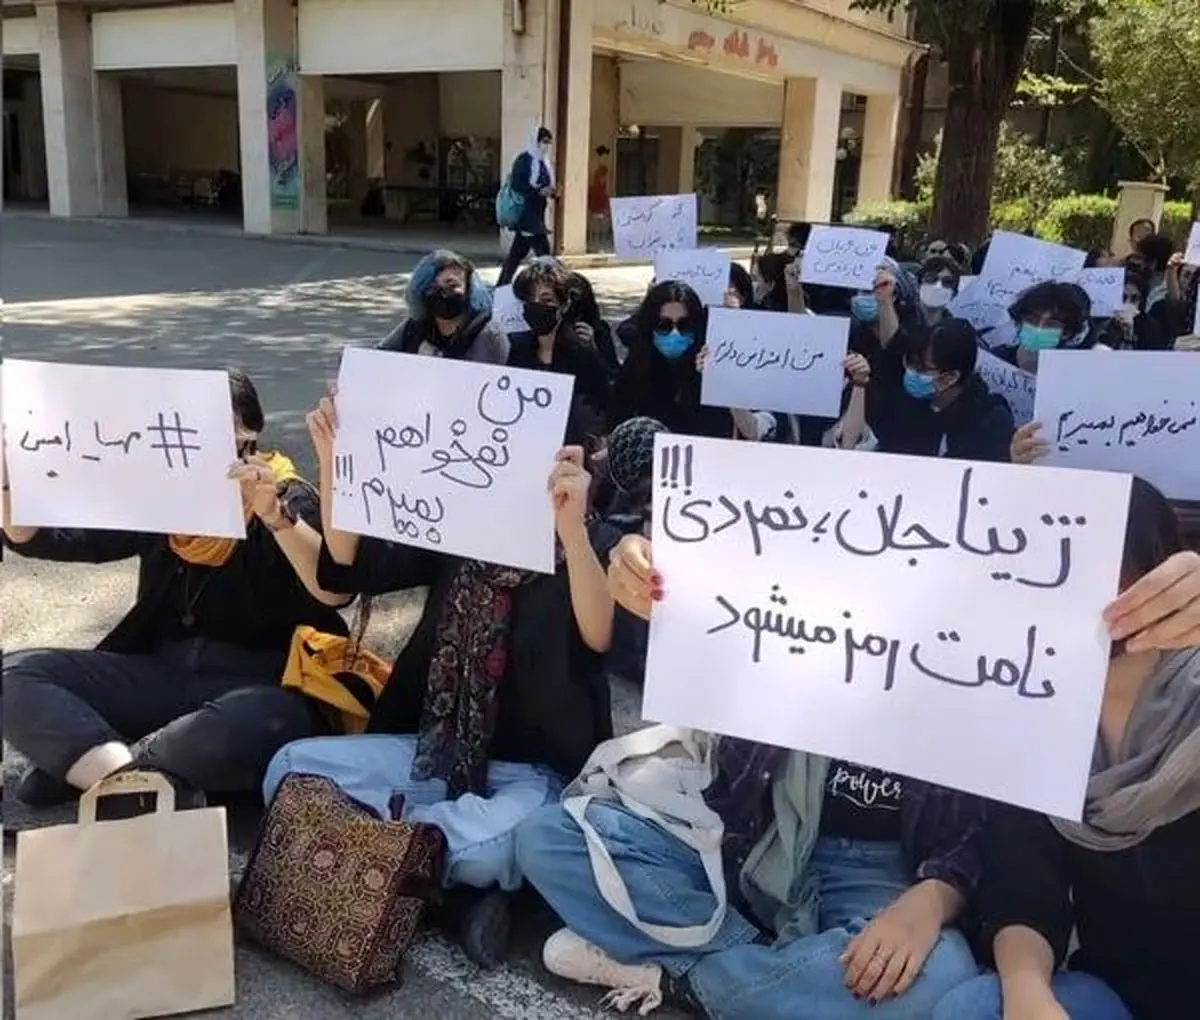 اتهام روزنامه دولت به دانشجویان معترض؛ مهره ضدانقلابند